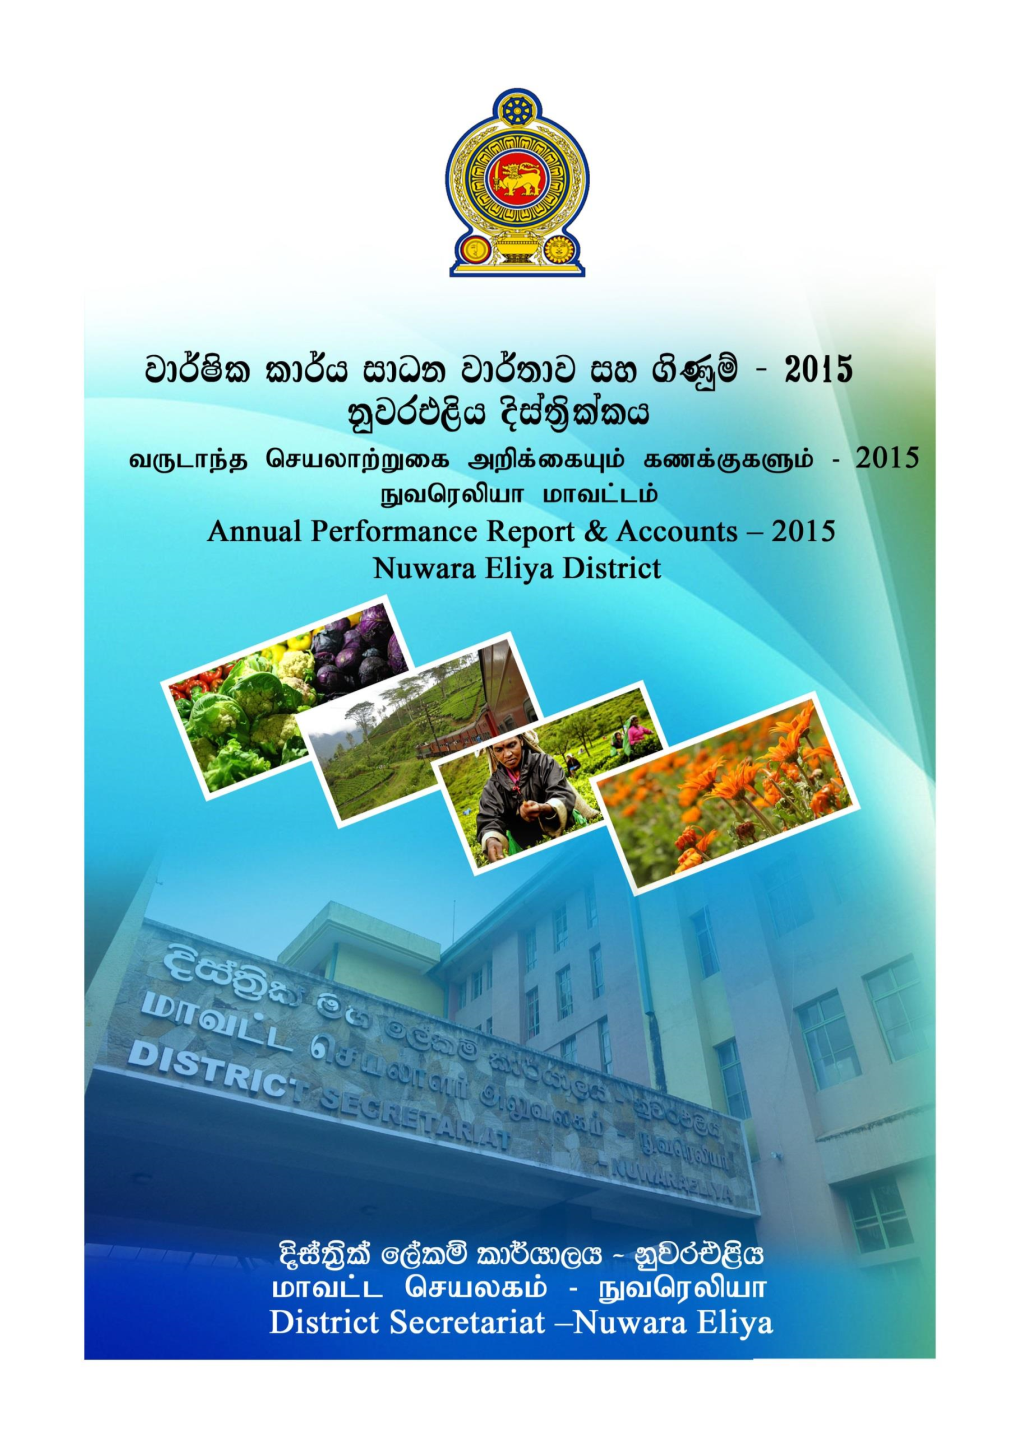 District Secretariat of Nuwara Eliya for the Year 2015